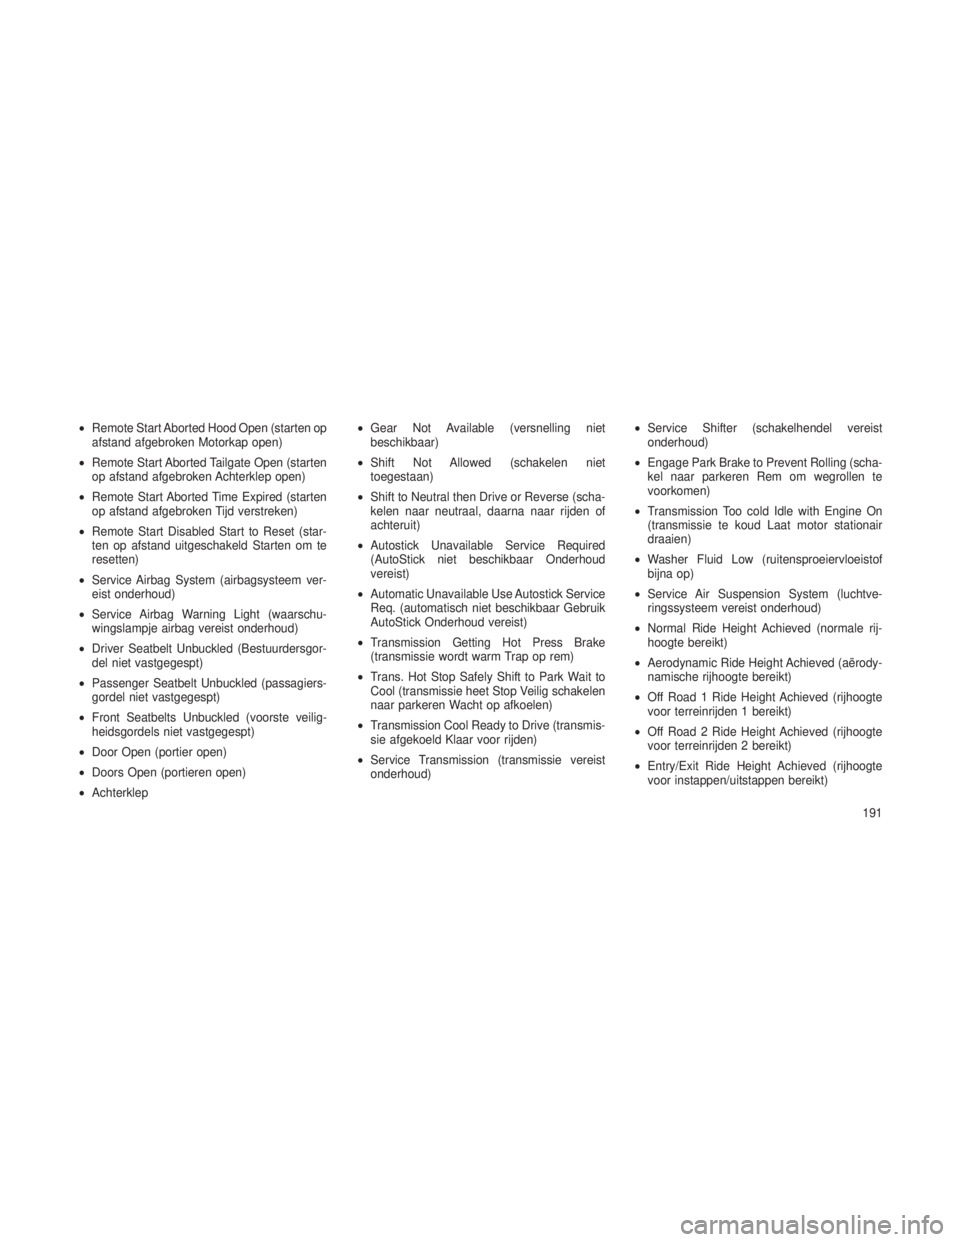 JEEP GRAND CHEROKEE 2013  Instructieboek (in Dutch) •Remote Start Aborted Hood Open (starten op
afstand afgebroken Motorkap open)
• Remote Start Aborted Tailgate Open (starten
op afstand afgebroken Achterklep open)
• Remote Start Aborted Time Exp